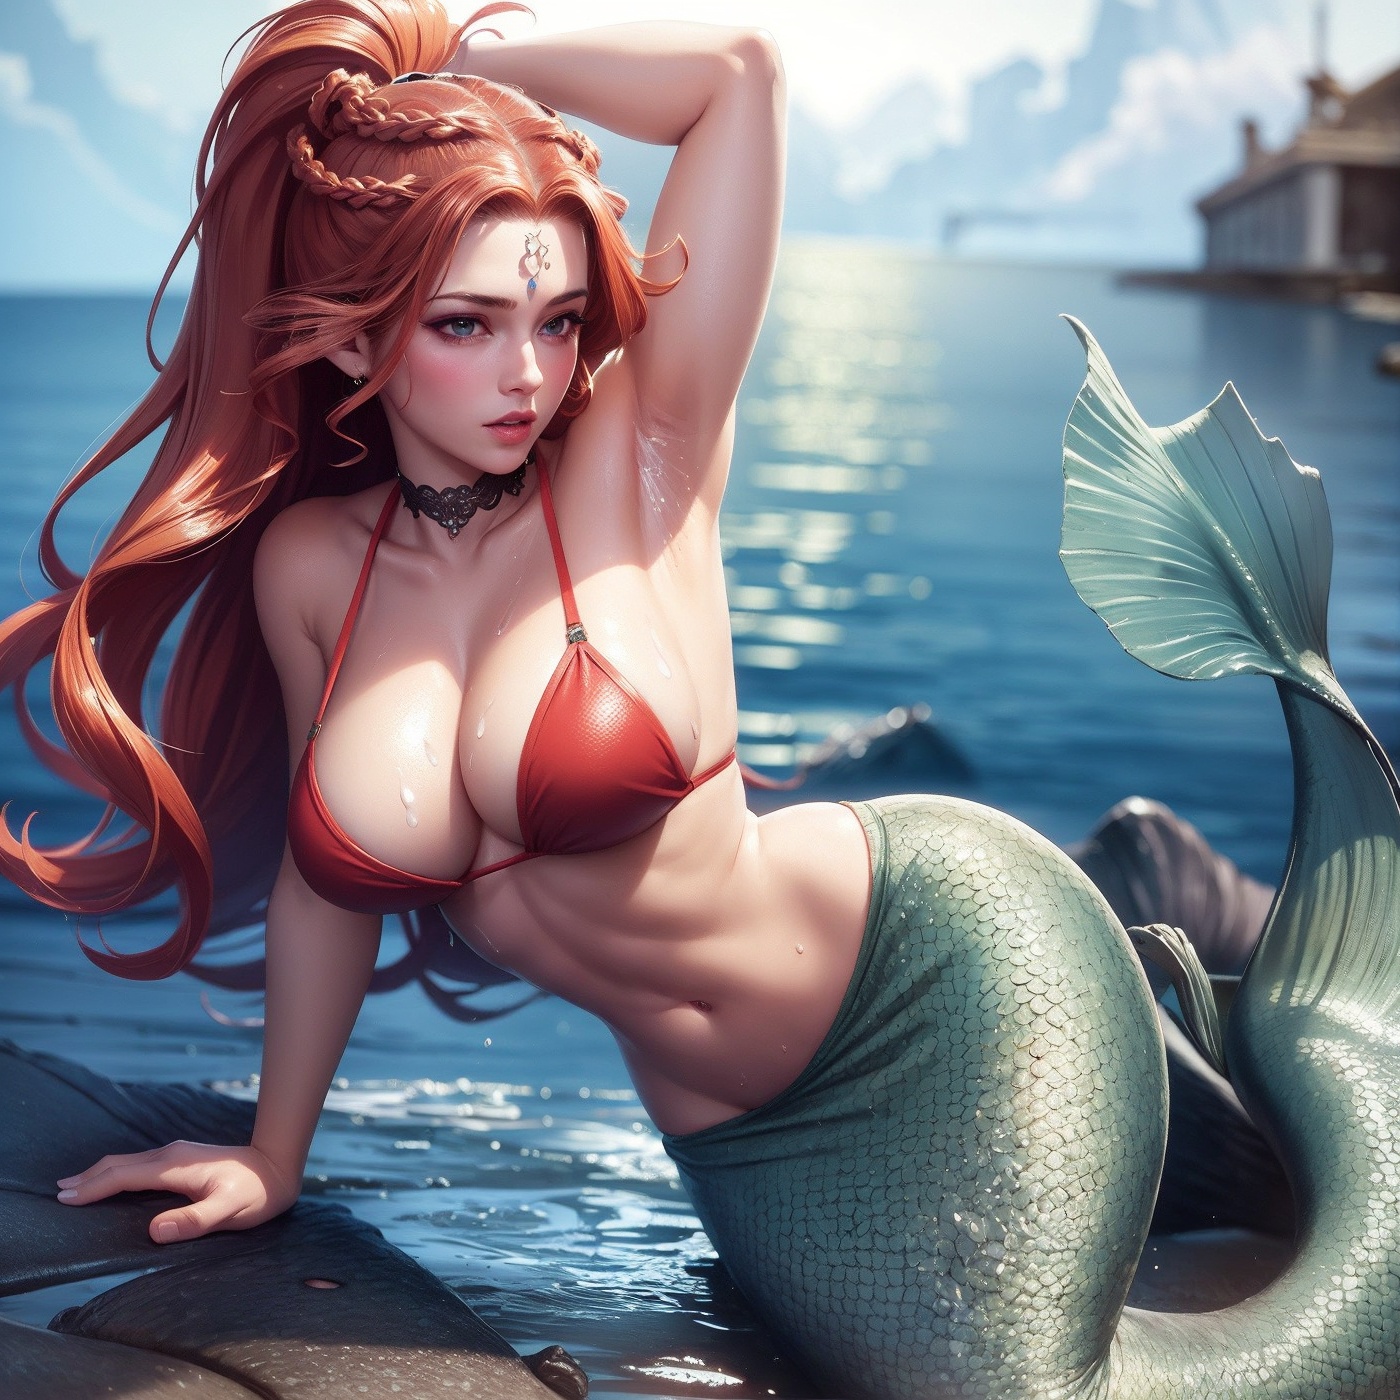 girls-with-large-breasts-Ocean-mermaid-II